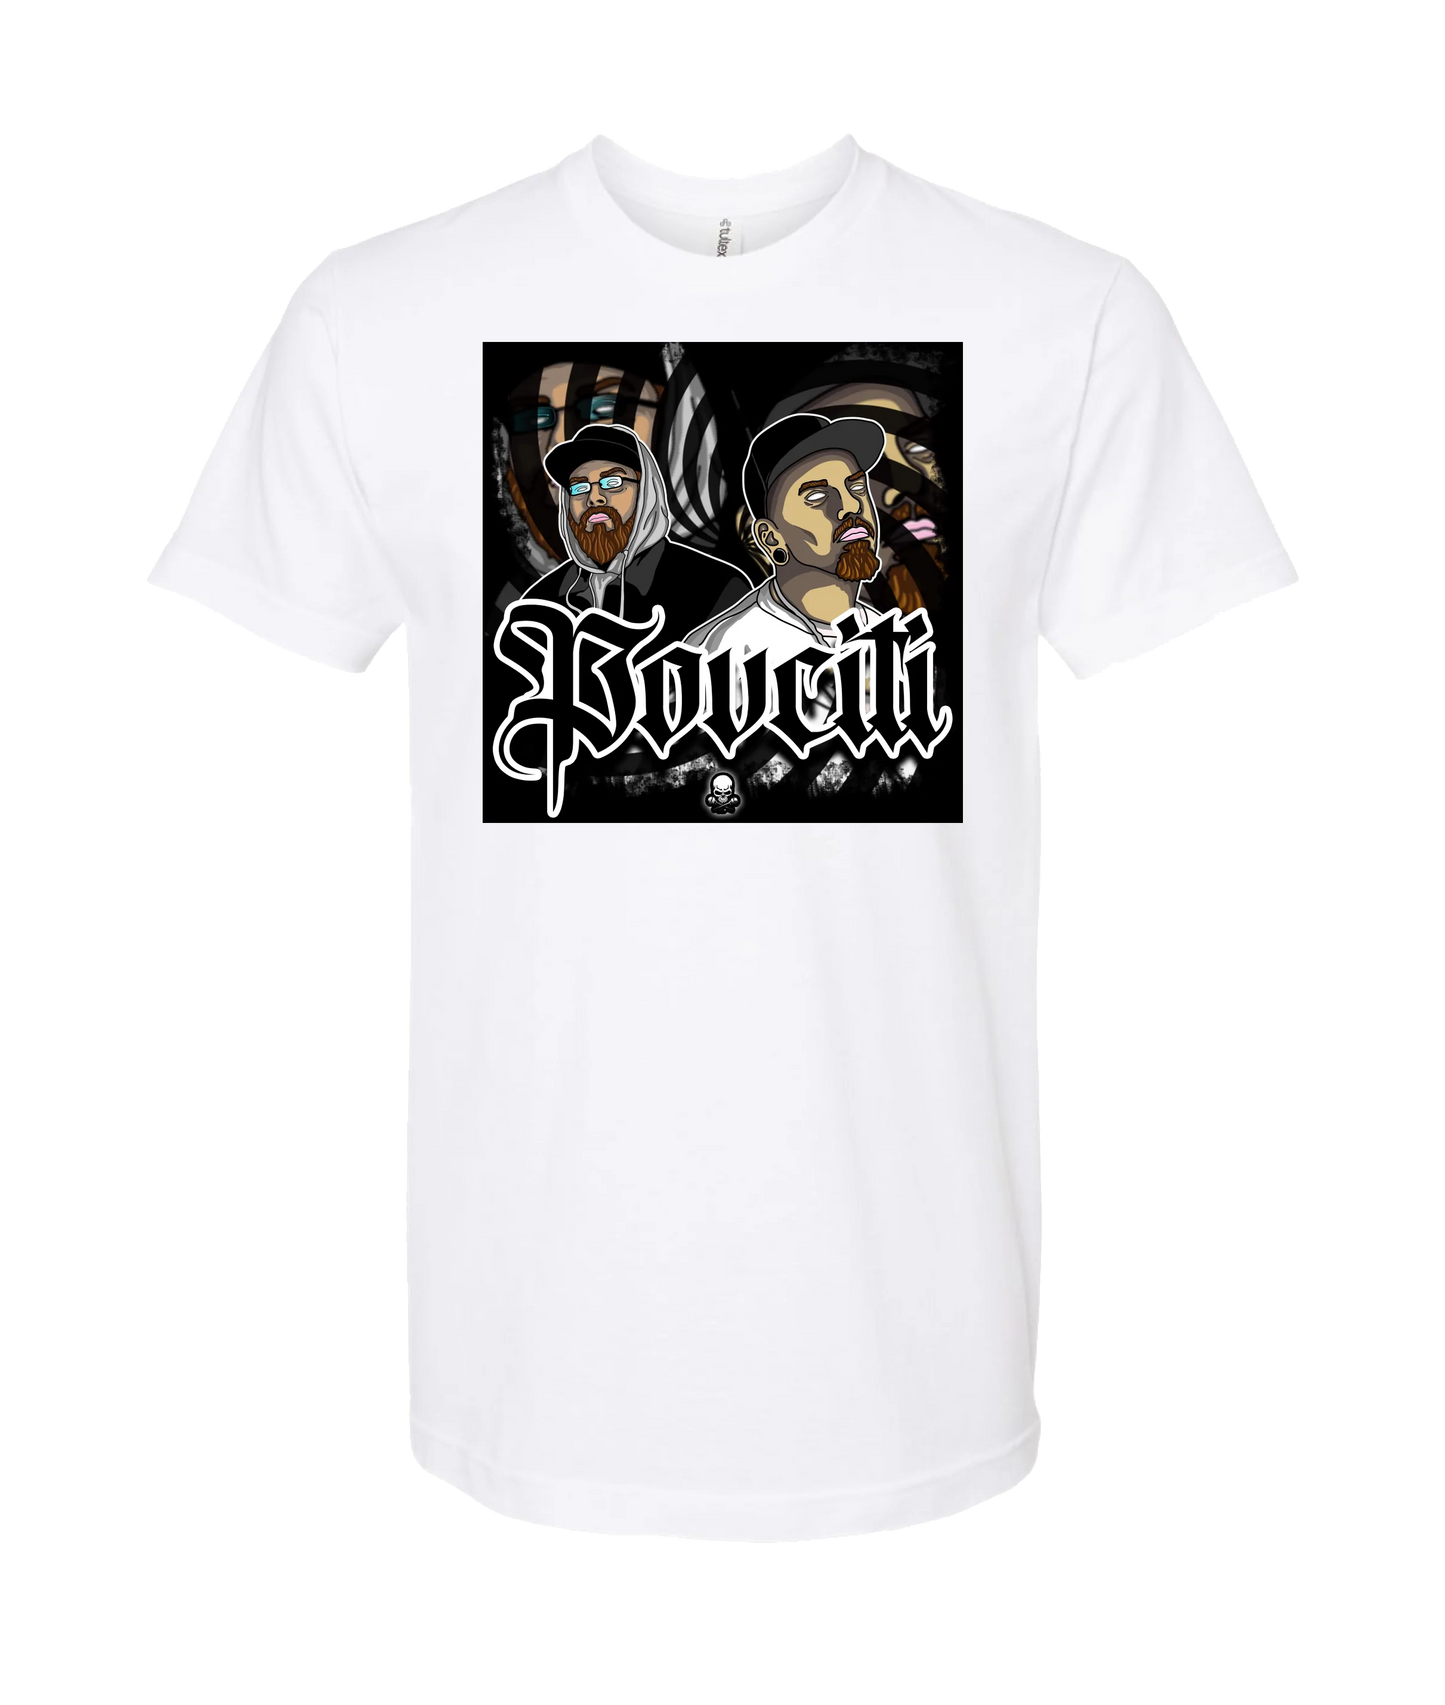 Ep!c of PovCiti - PovCiti  - White T-Shirt